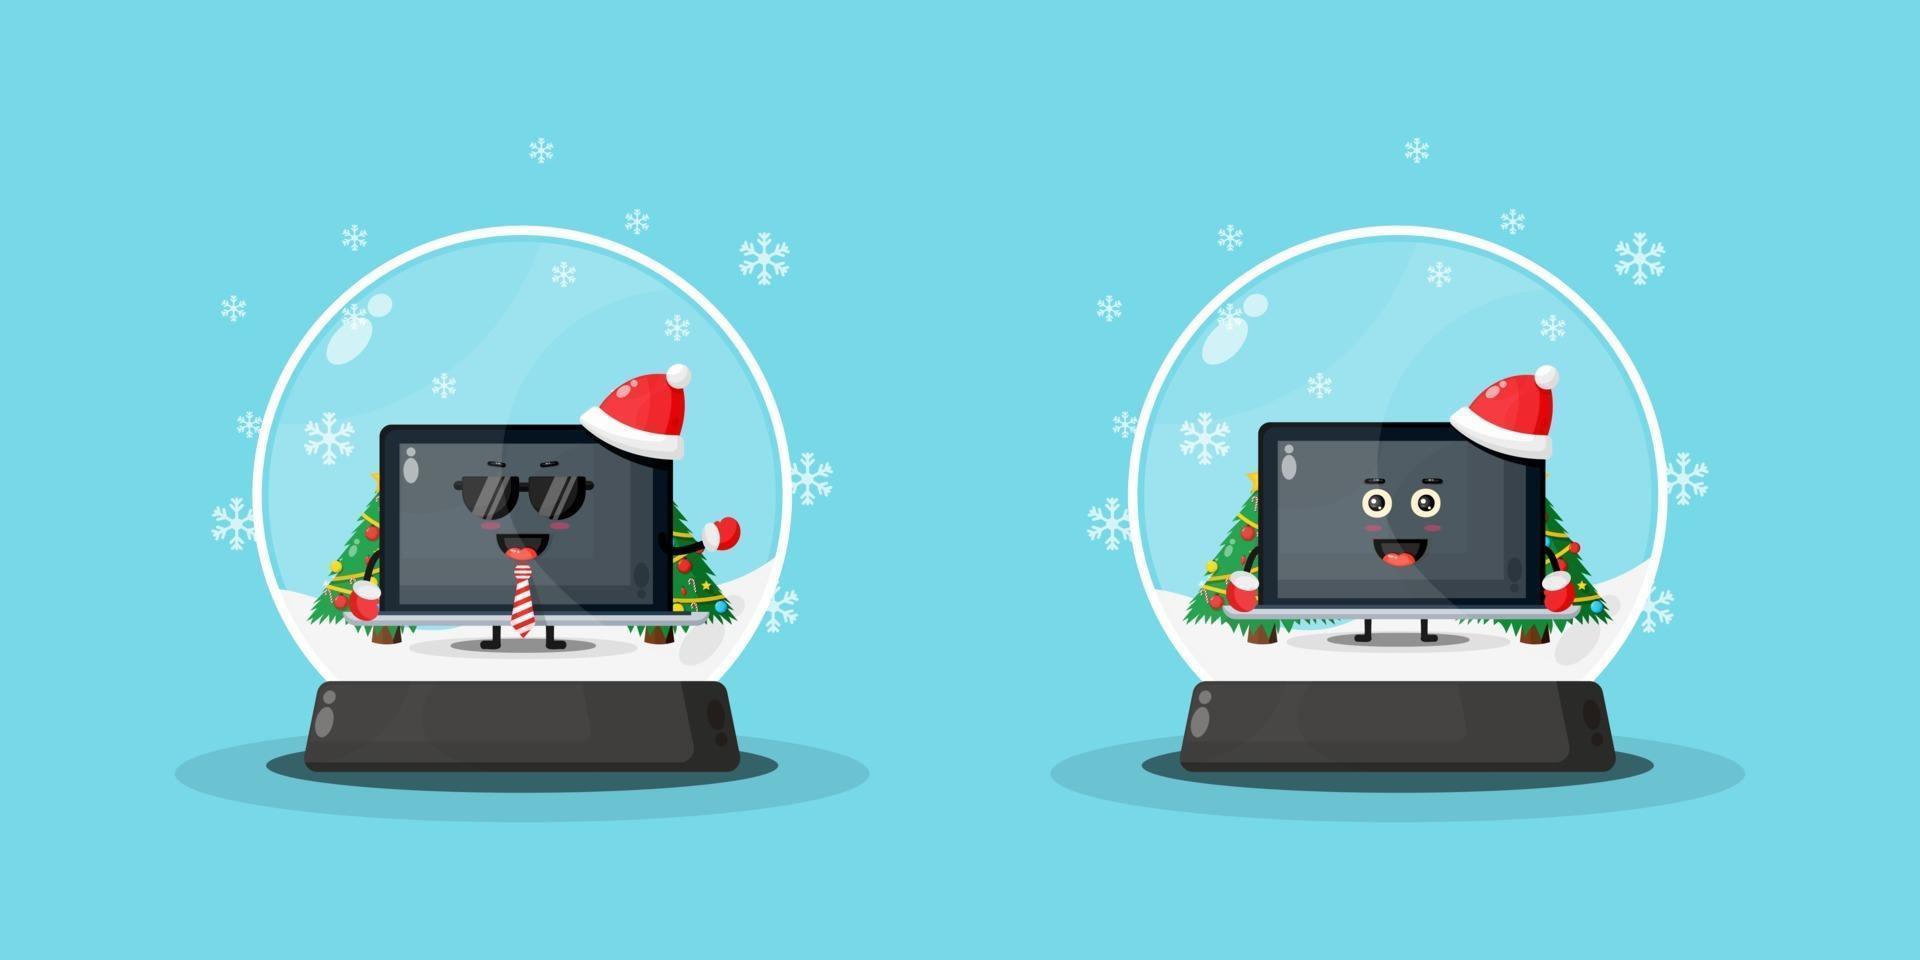 Cute laptop mascot in a snowglobe vector